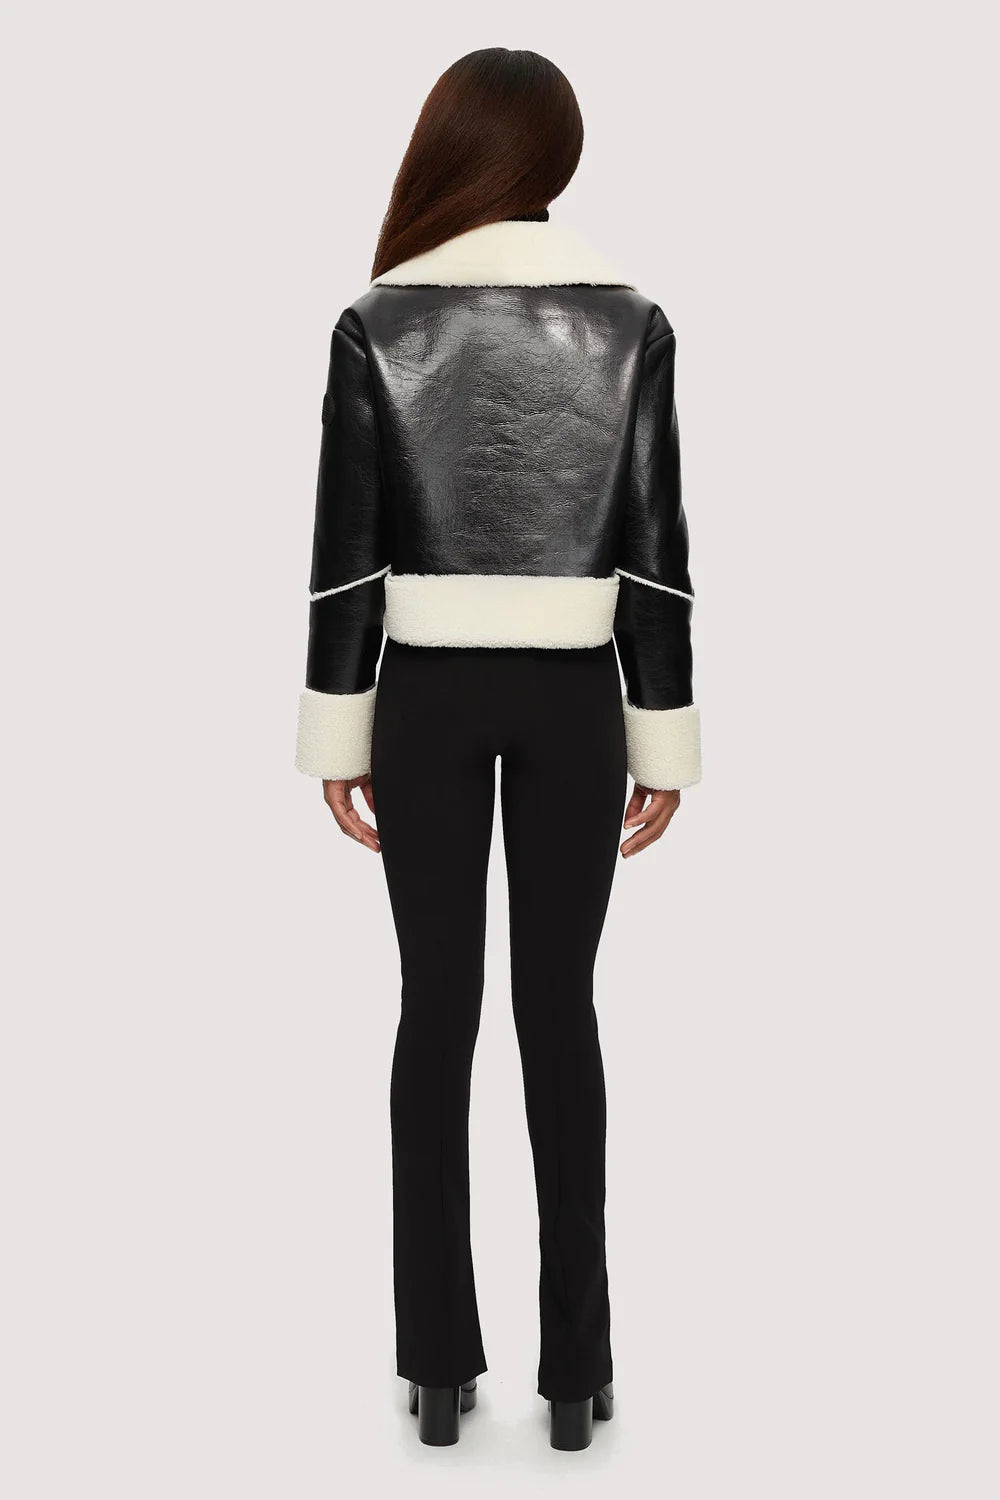 Emika Black Leather Jacket, Jacket by Noise | LIT Boutique